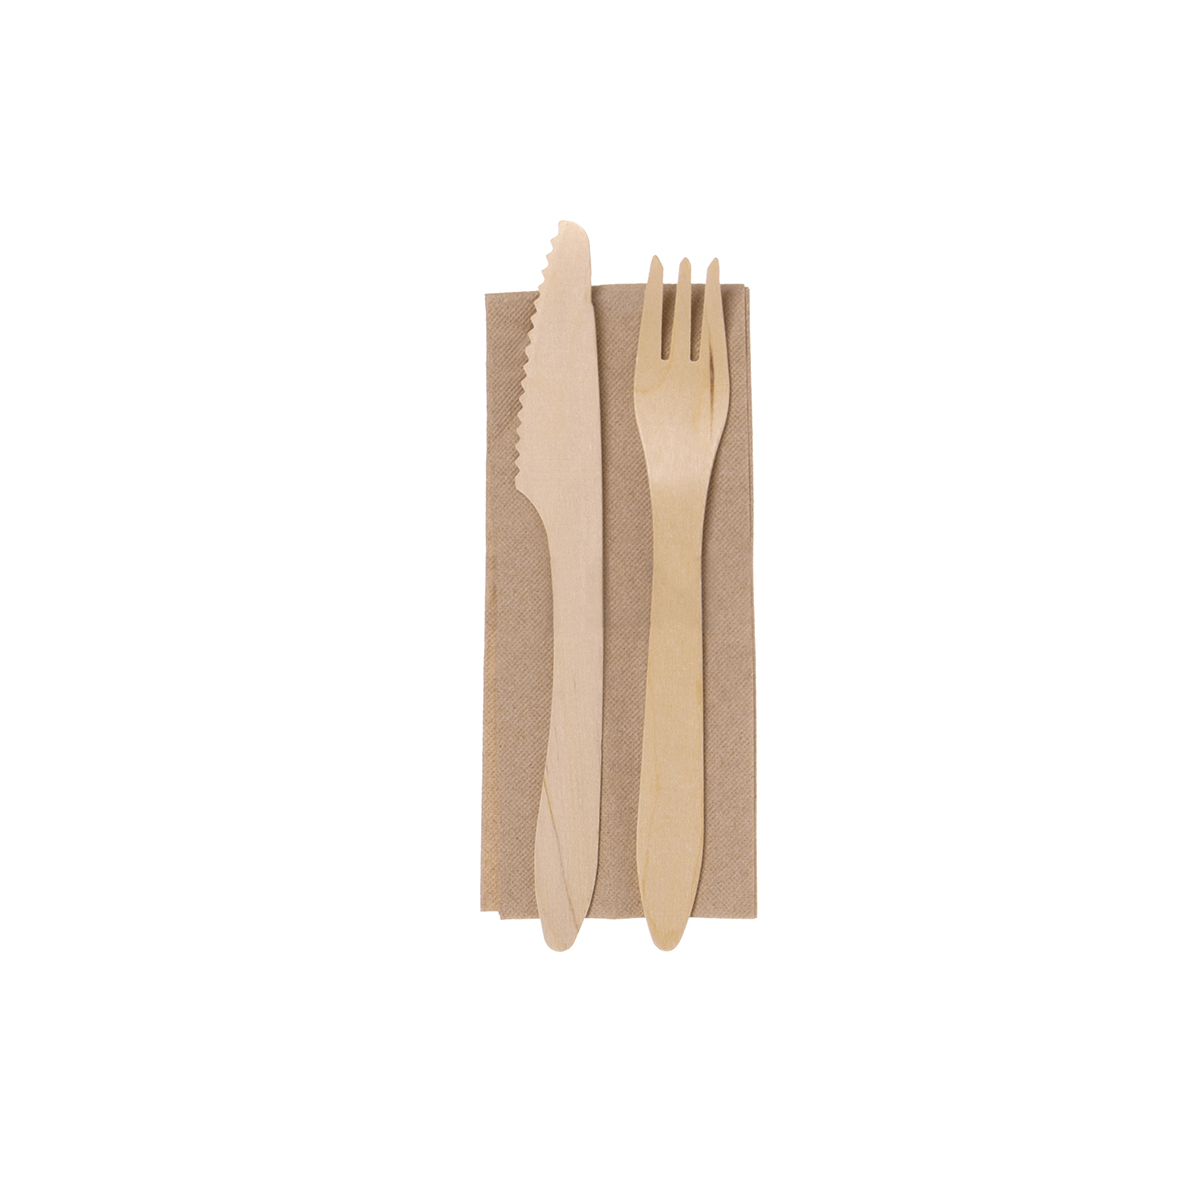 Holz Besteck Set aus Messer, Gabel und Serviette